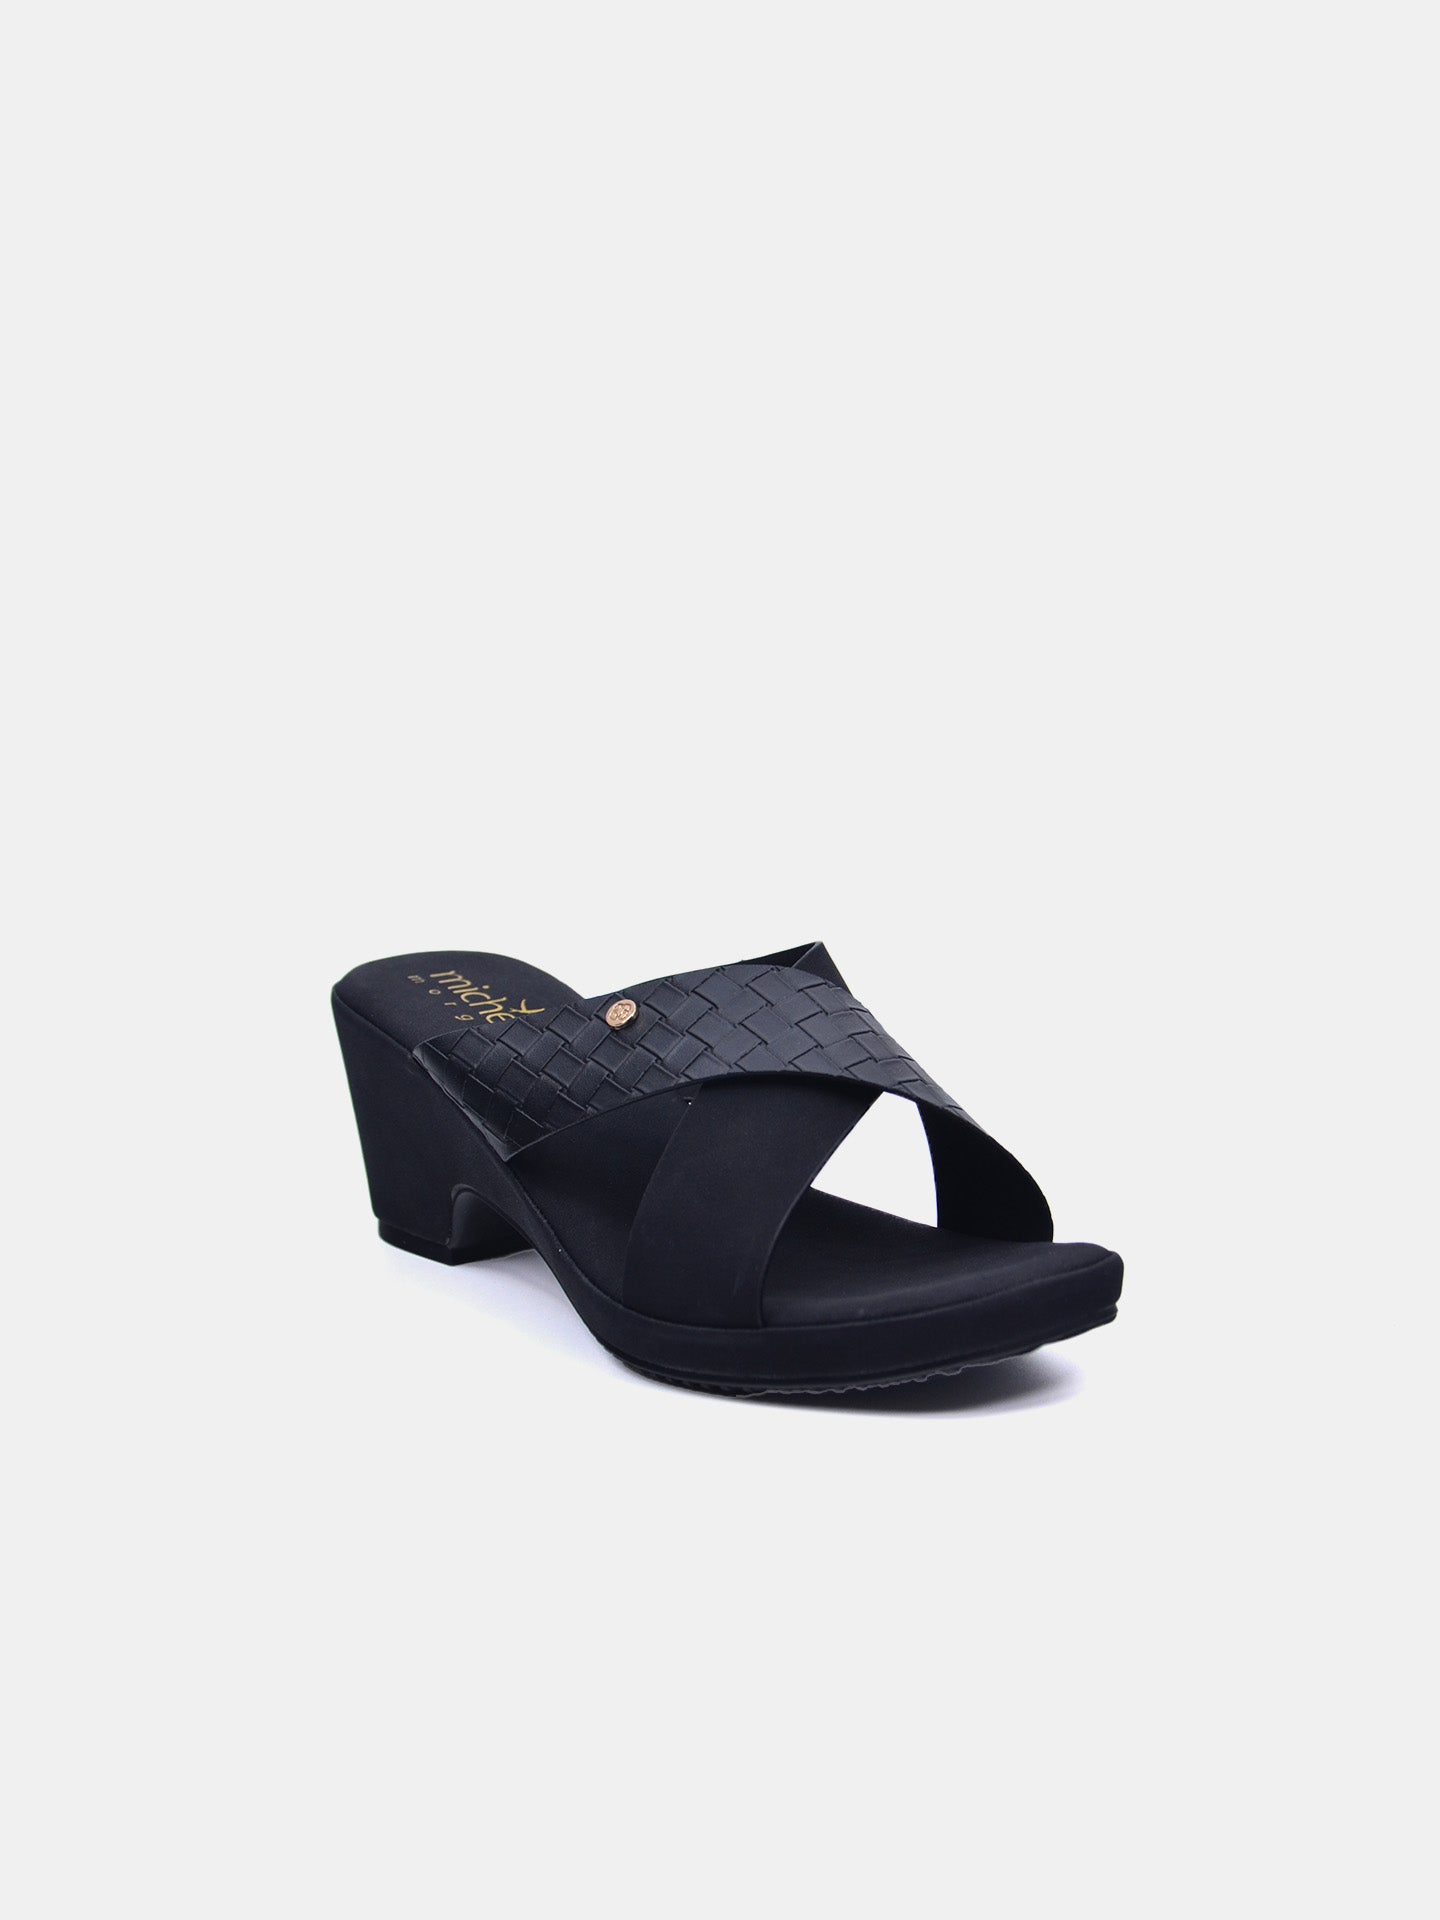 Michelle Morgan 114RJ211 Women's Heeled Sandals #color_Black